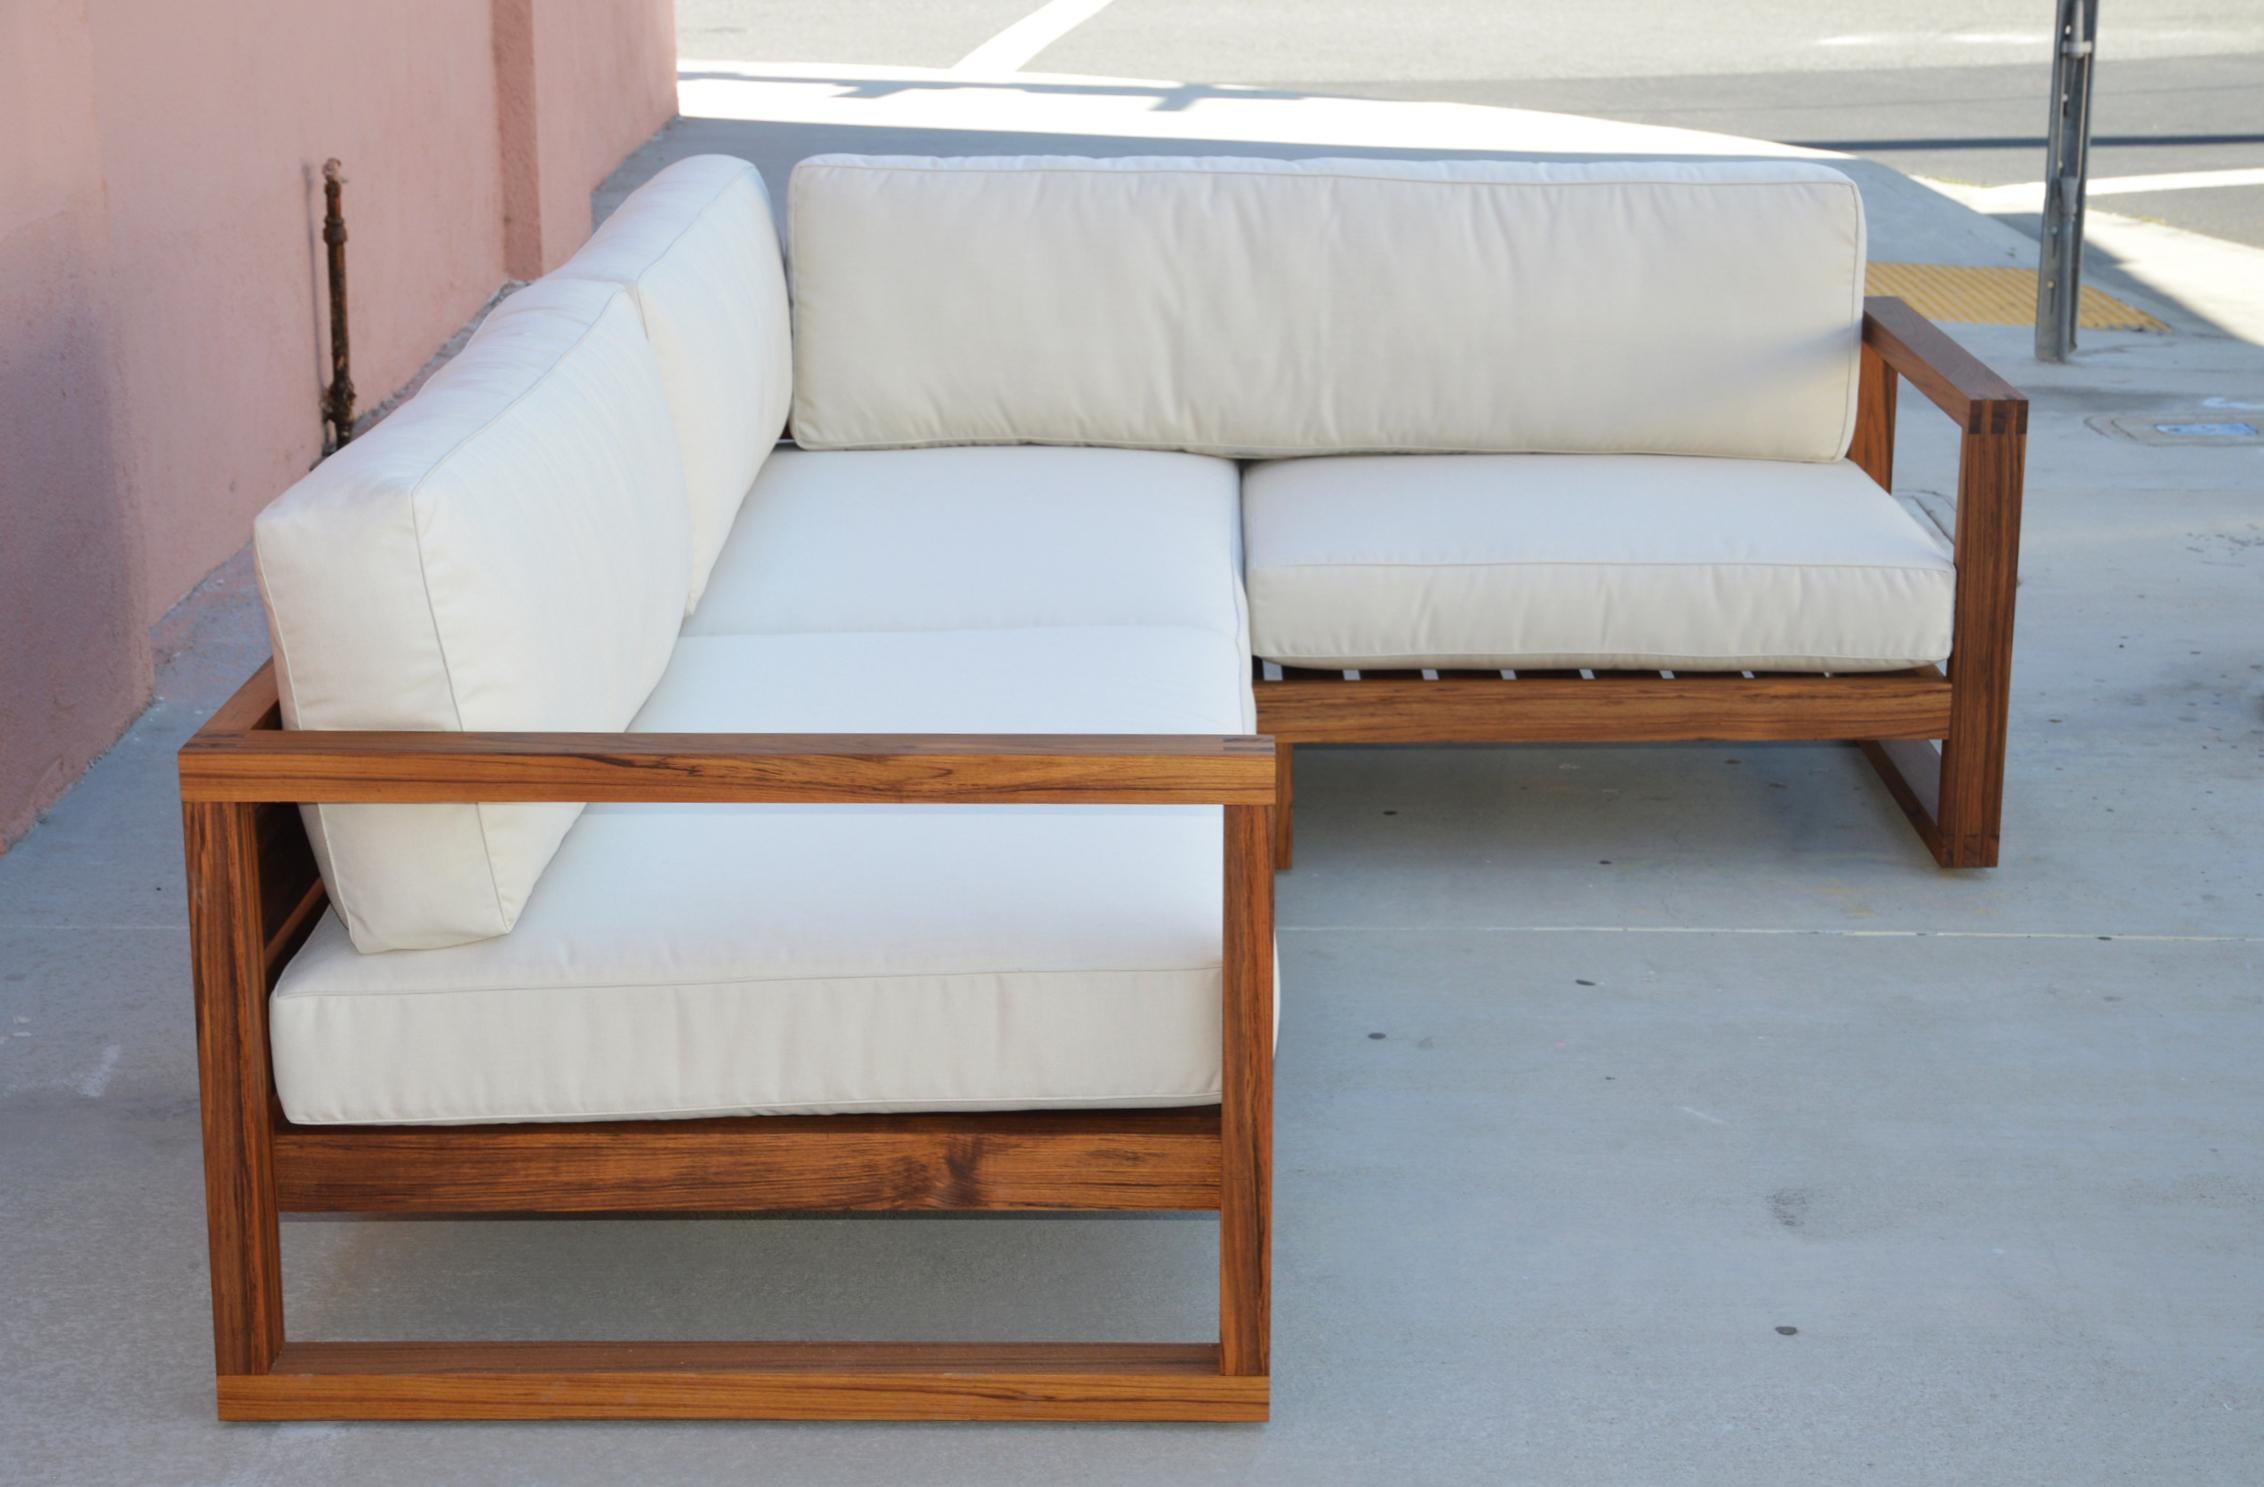 Dieses Outdoor-Sectional-Sofa kann in jeder Größe bestellt werden. Auf dem Bild misst eine Seite 108